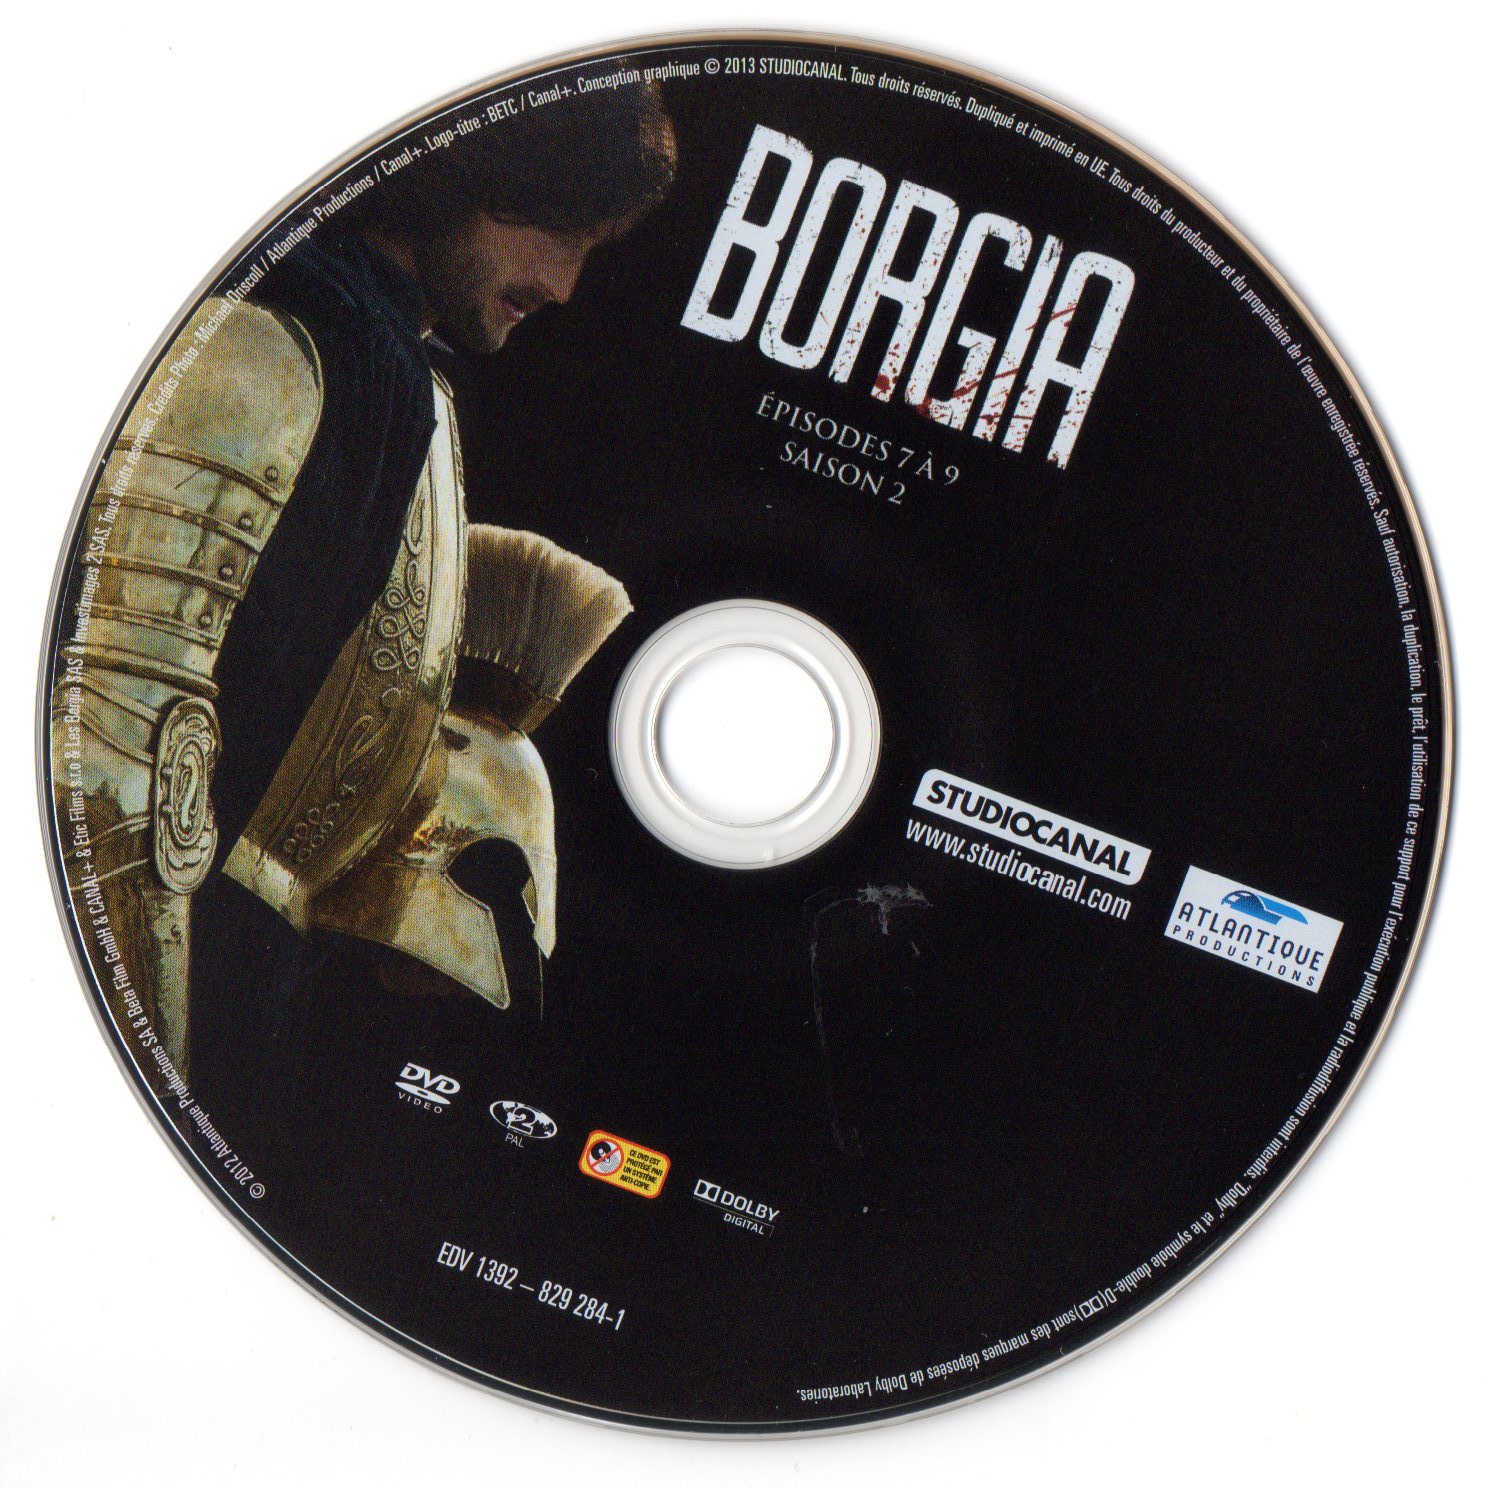 Borgia Saison 2 DVD 3